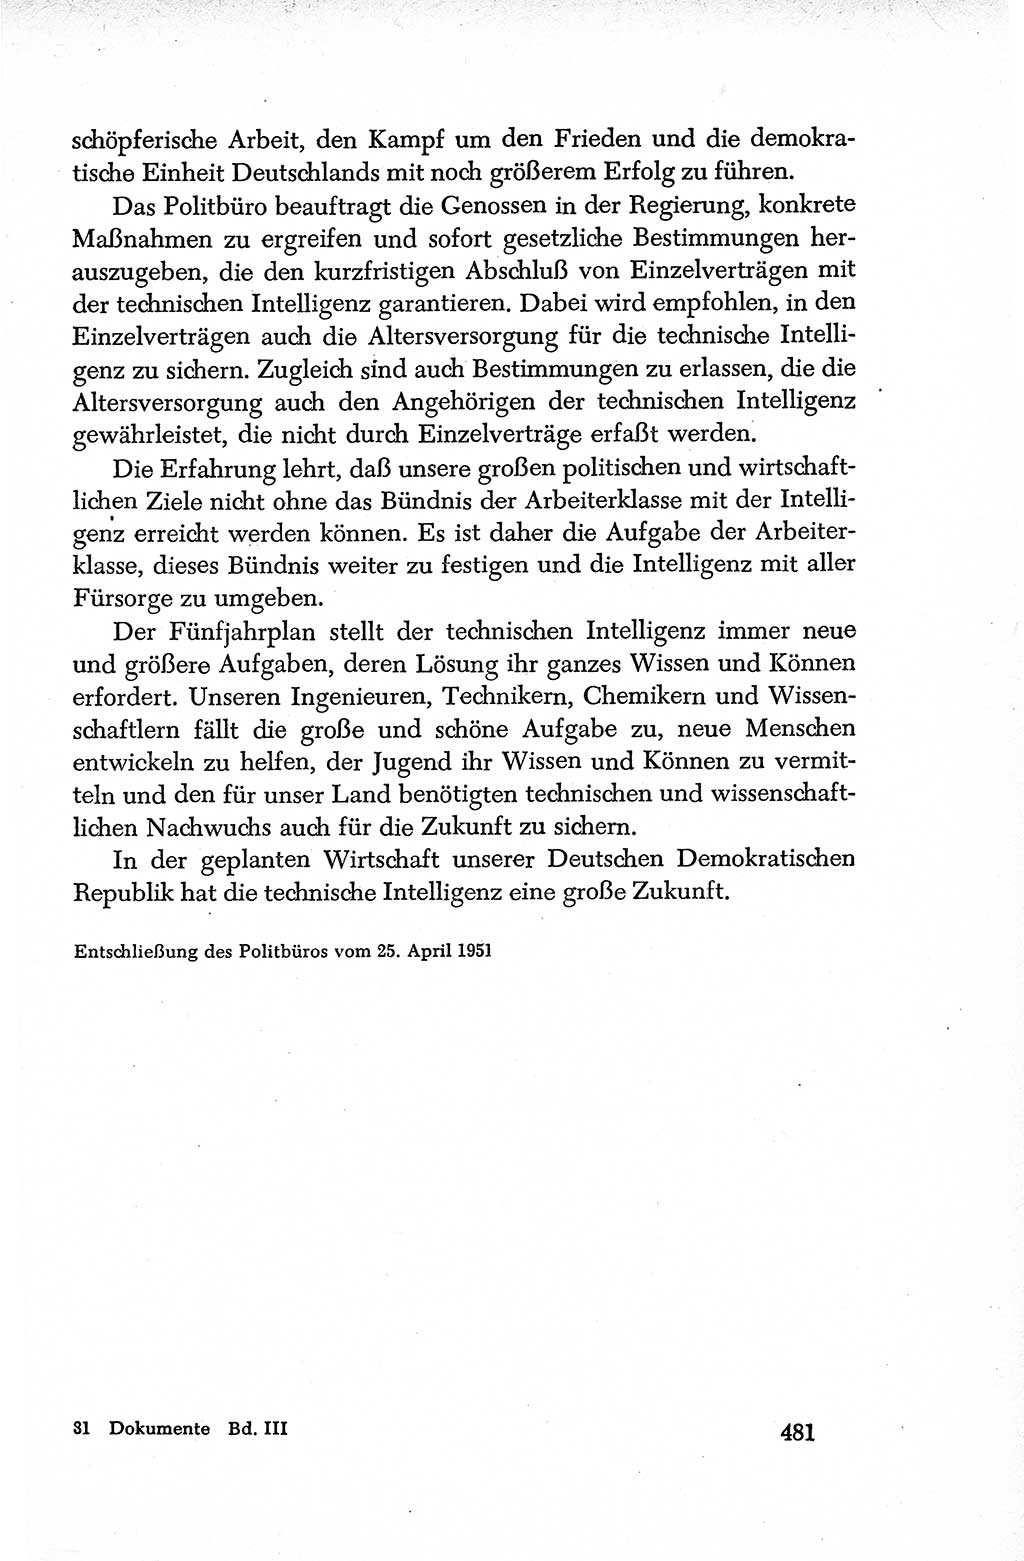 Dokumente der Sozialistischen Einheitspartei Deutschlands (SED) [Deutsche Demokratische Republik (DDR)] 1950-1952, Seite 481 (Dok. SED DDR 1950-1952, S. 481)